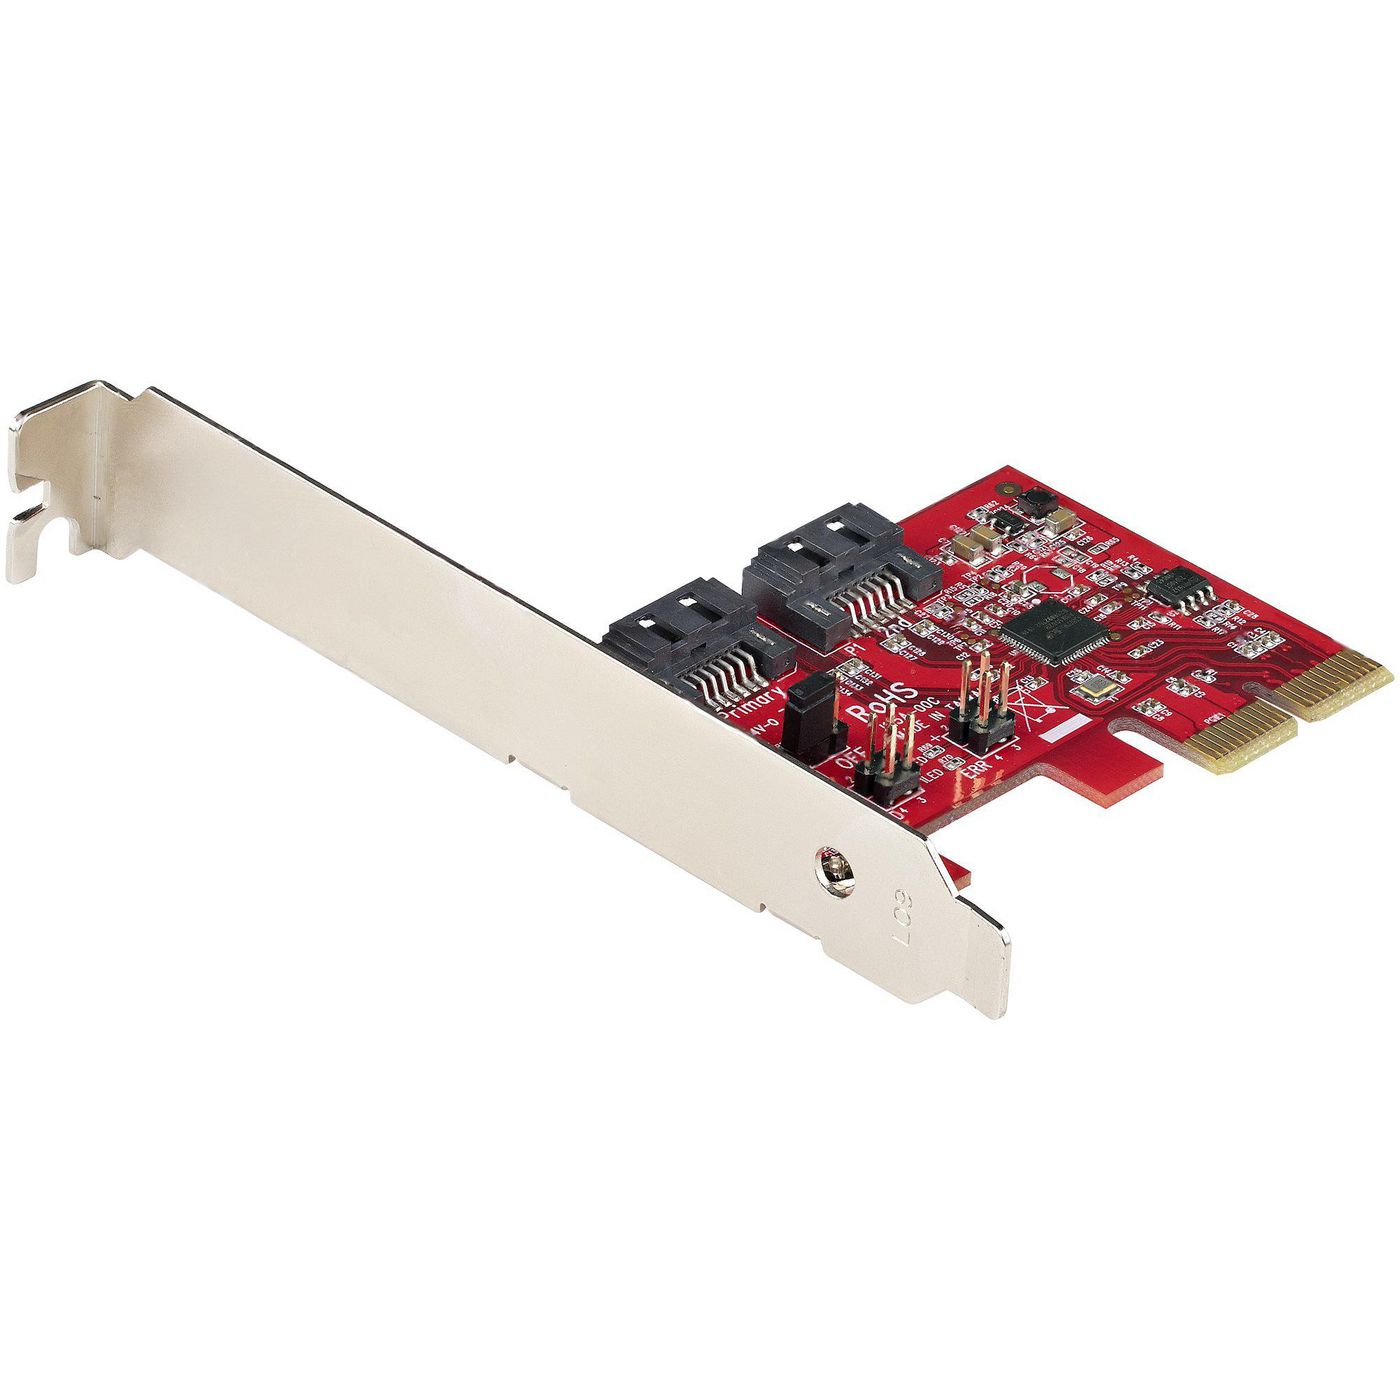 StarTechcom 2P6GR-PCIE-SATA-CARD W128273122 Sata Pcie Card - 2 Port Pcie 